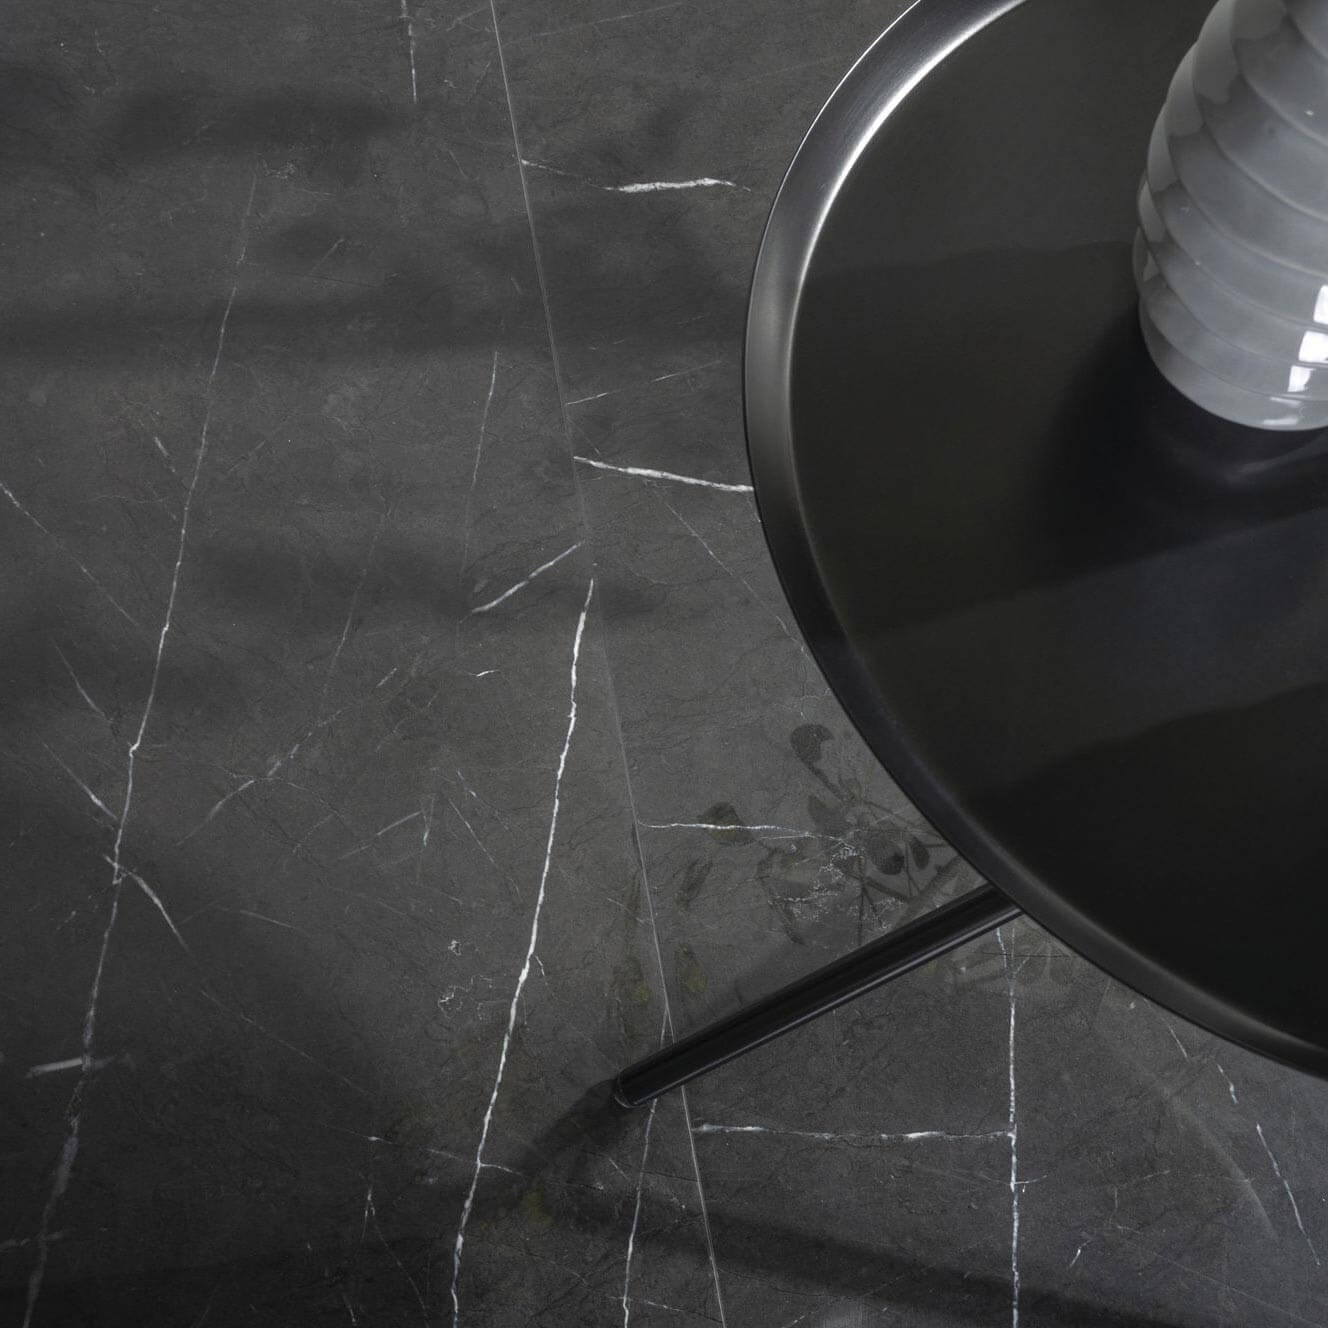 Carrelage sol et mur poli aspect marbre noir Marquina 120x120 cm rectifié